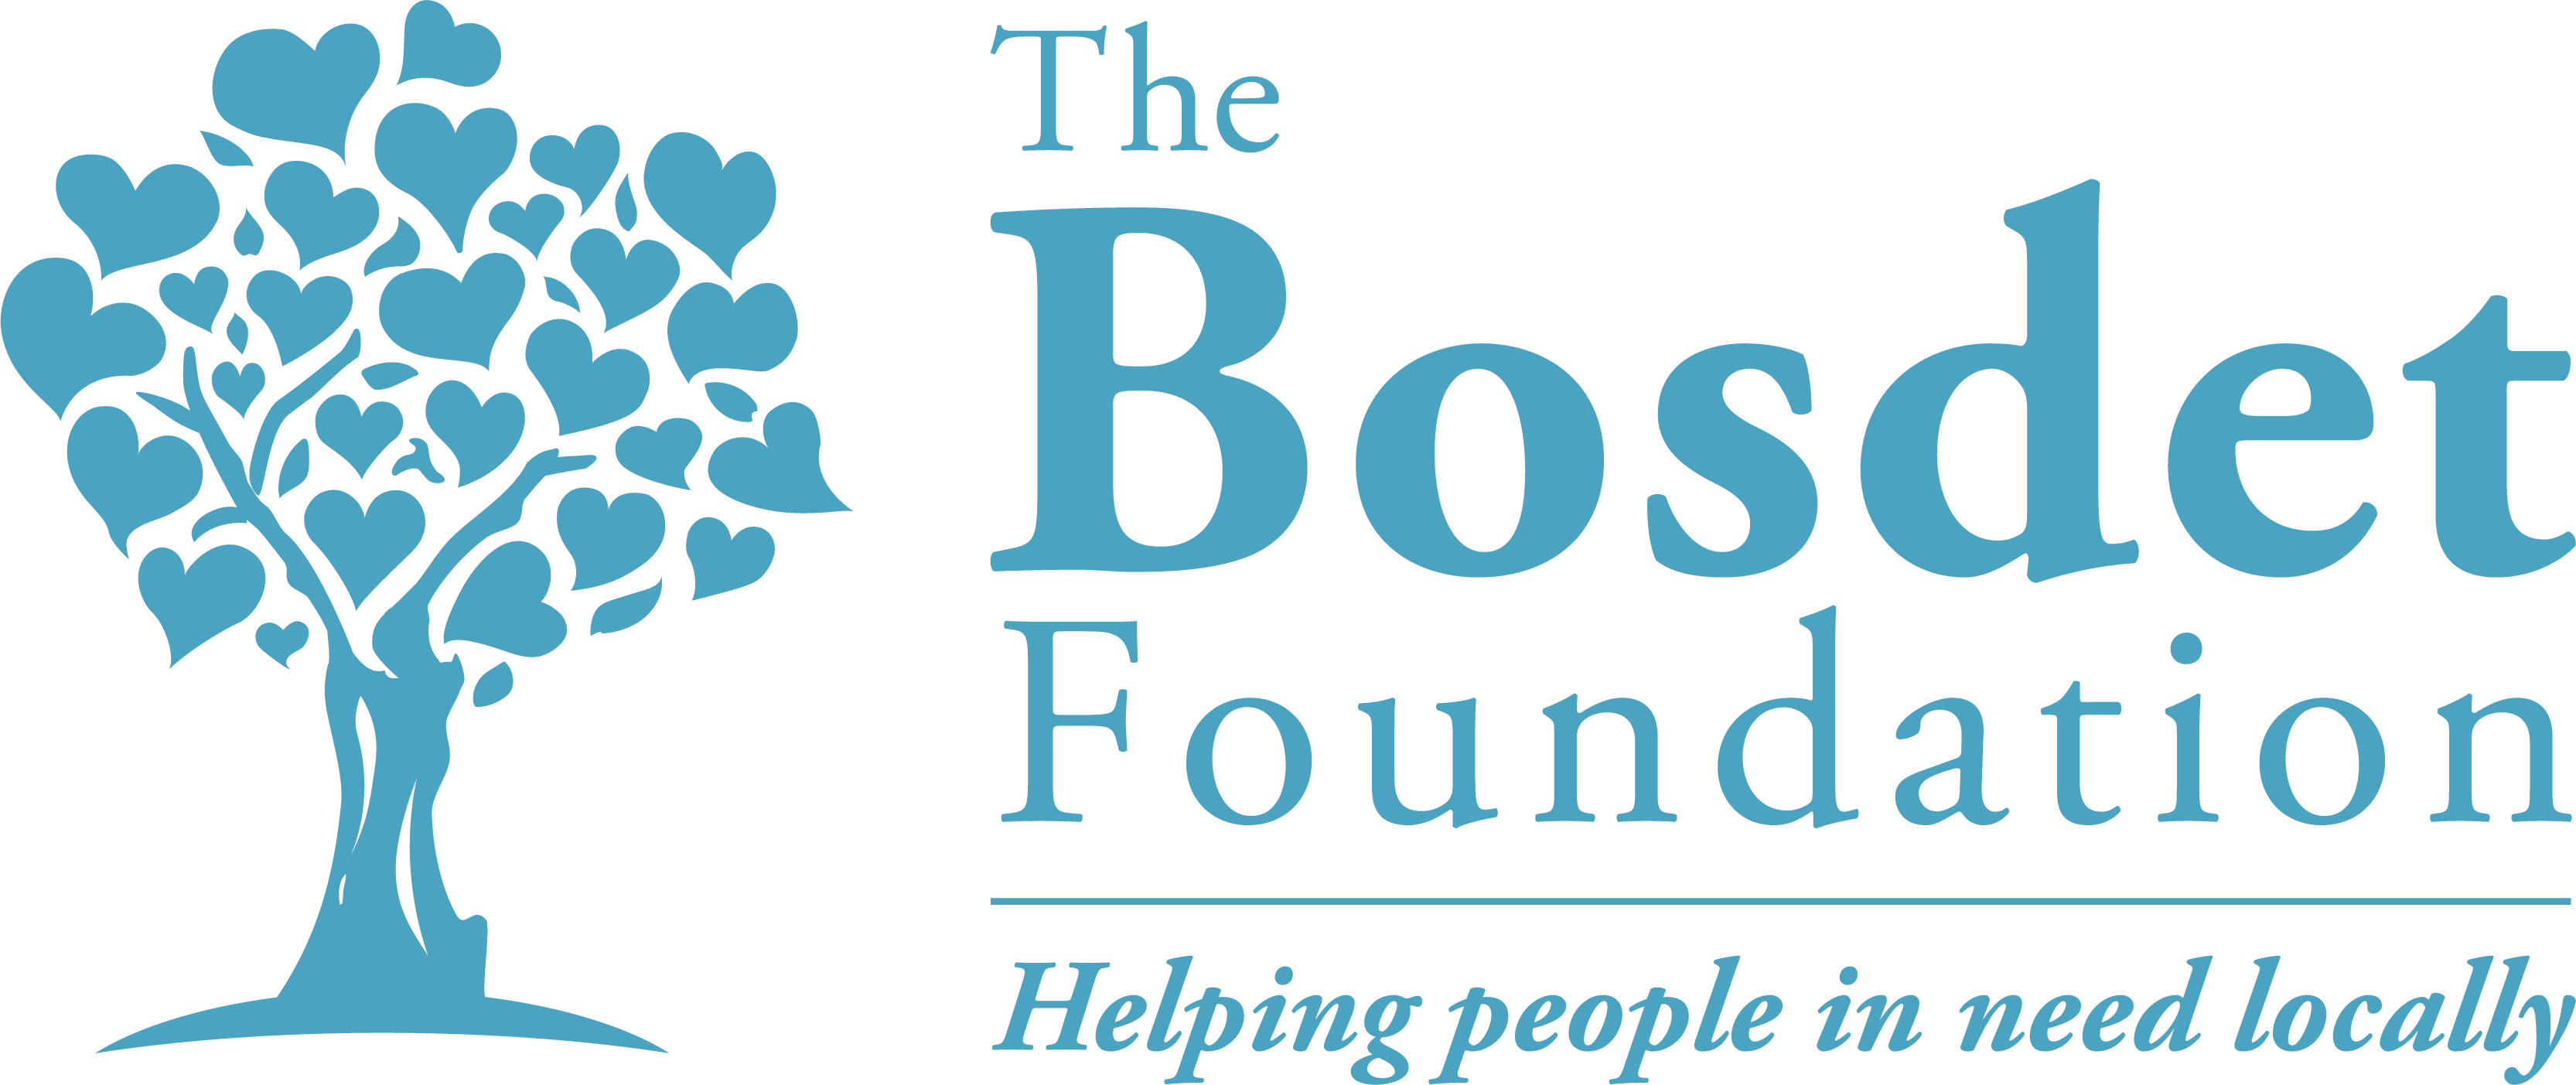 Bosdet Foundation Image